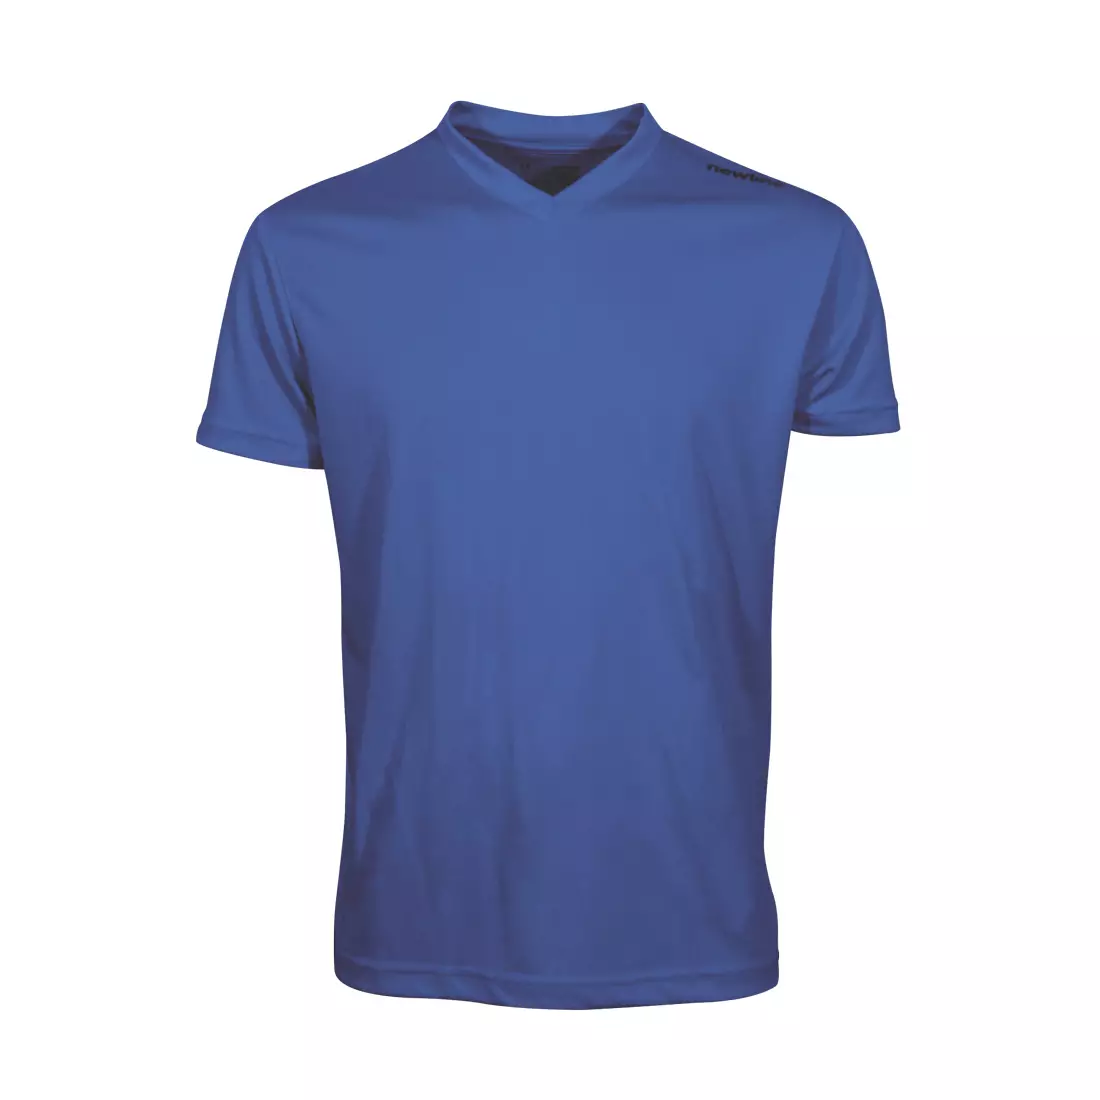 NEWLINE BASE COOL T-SHIRT - men's running T-shirt 14614-11